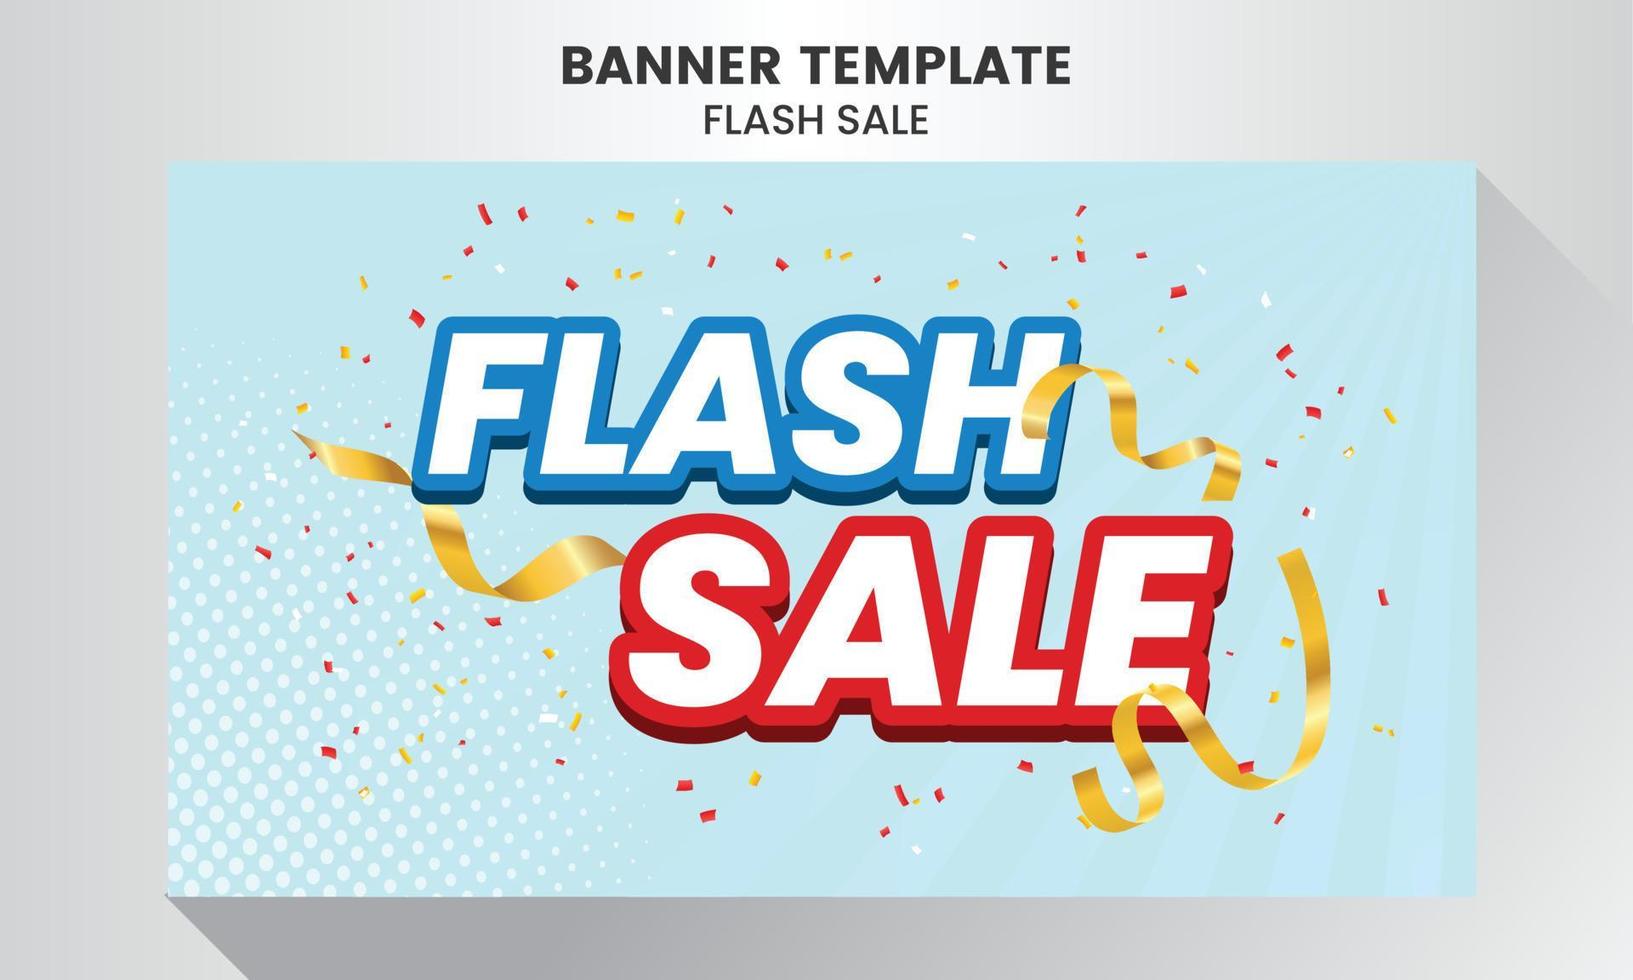 Flash Sale Shopping Poster oder Banner mit 3D-Text. Flash Sales Banner Template Design. Sonderangebot Flash Sale Kampagne oder Promotion. vektor